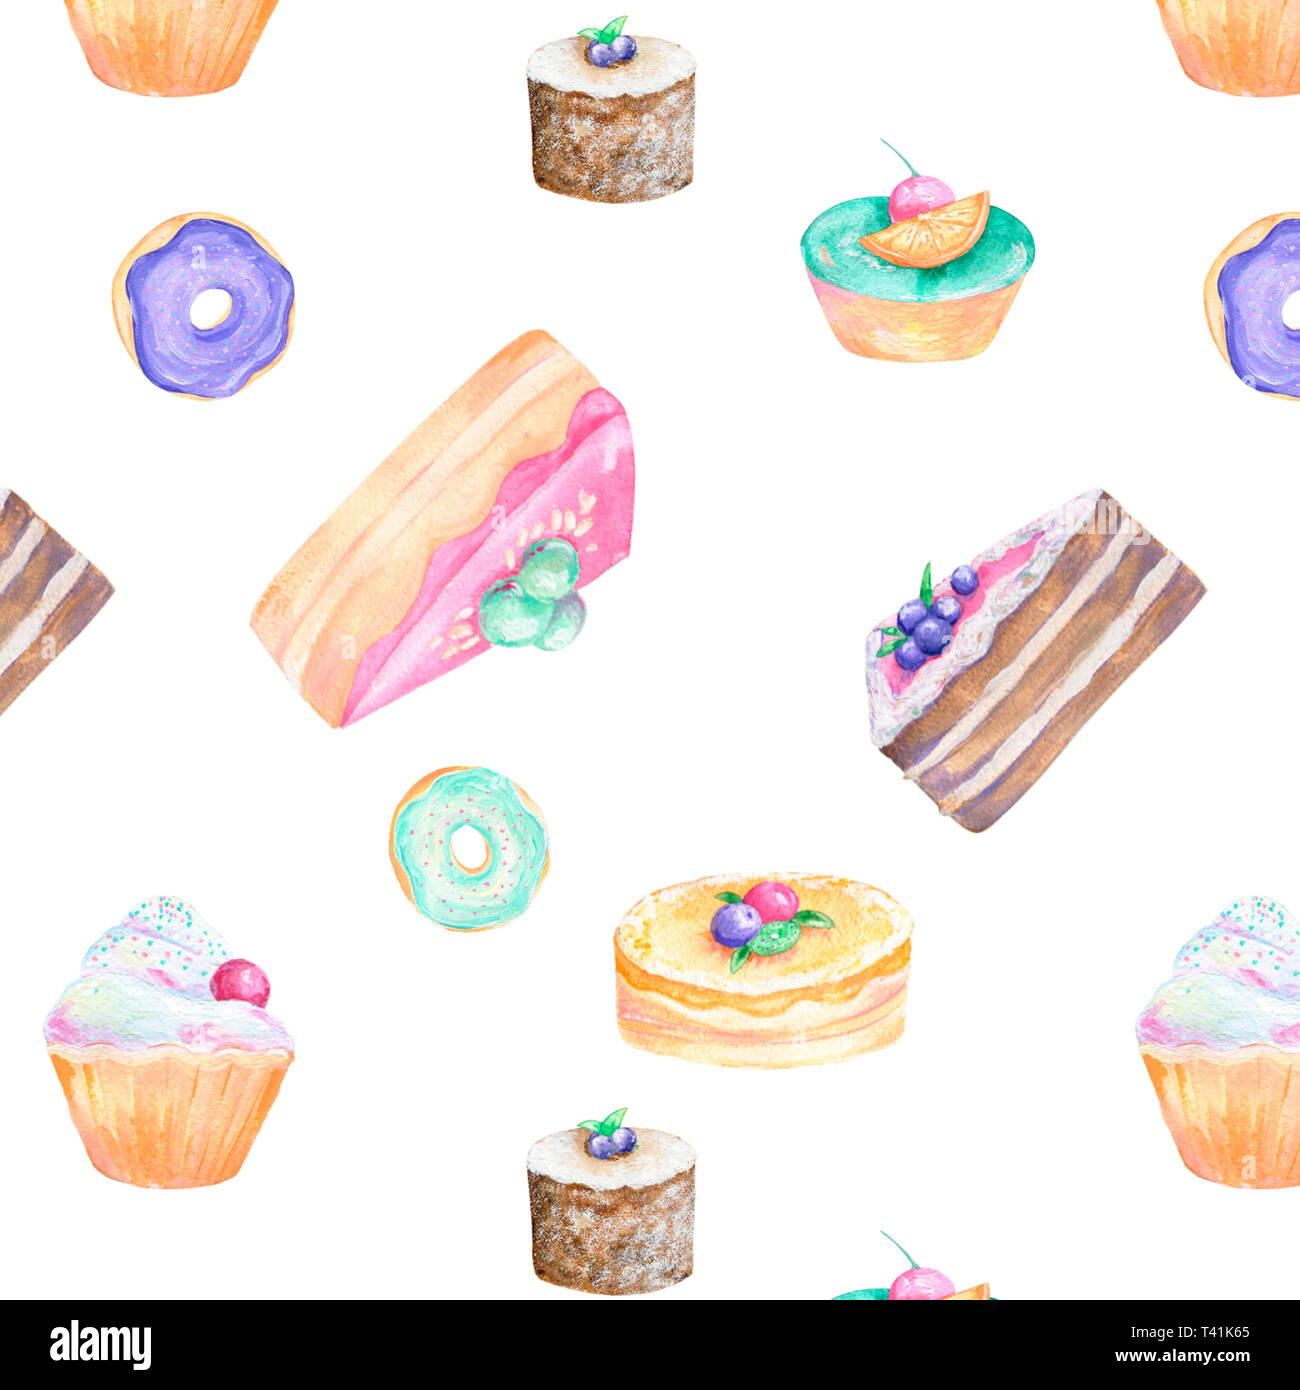 Kuchen essen aquarell gouache clip art Zeichnung Abbildung coffe Deseret  geometrische leckere Torte auf Hintergrund Stockfotografie - Alamy